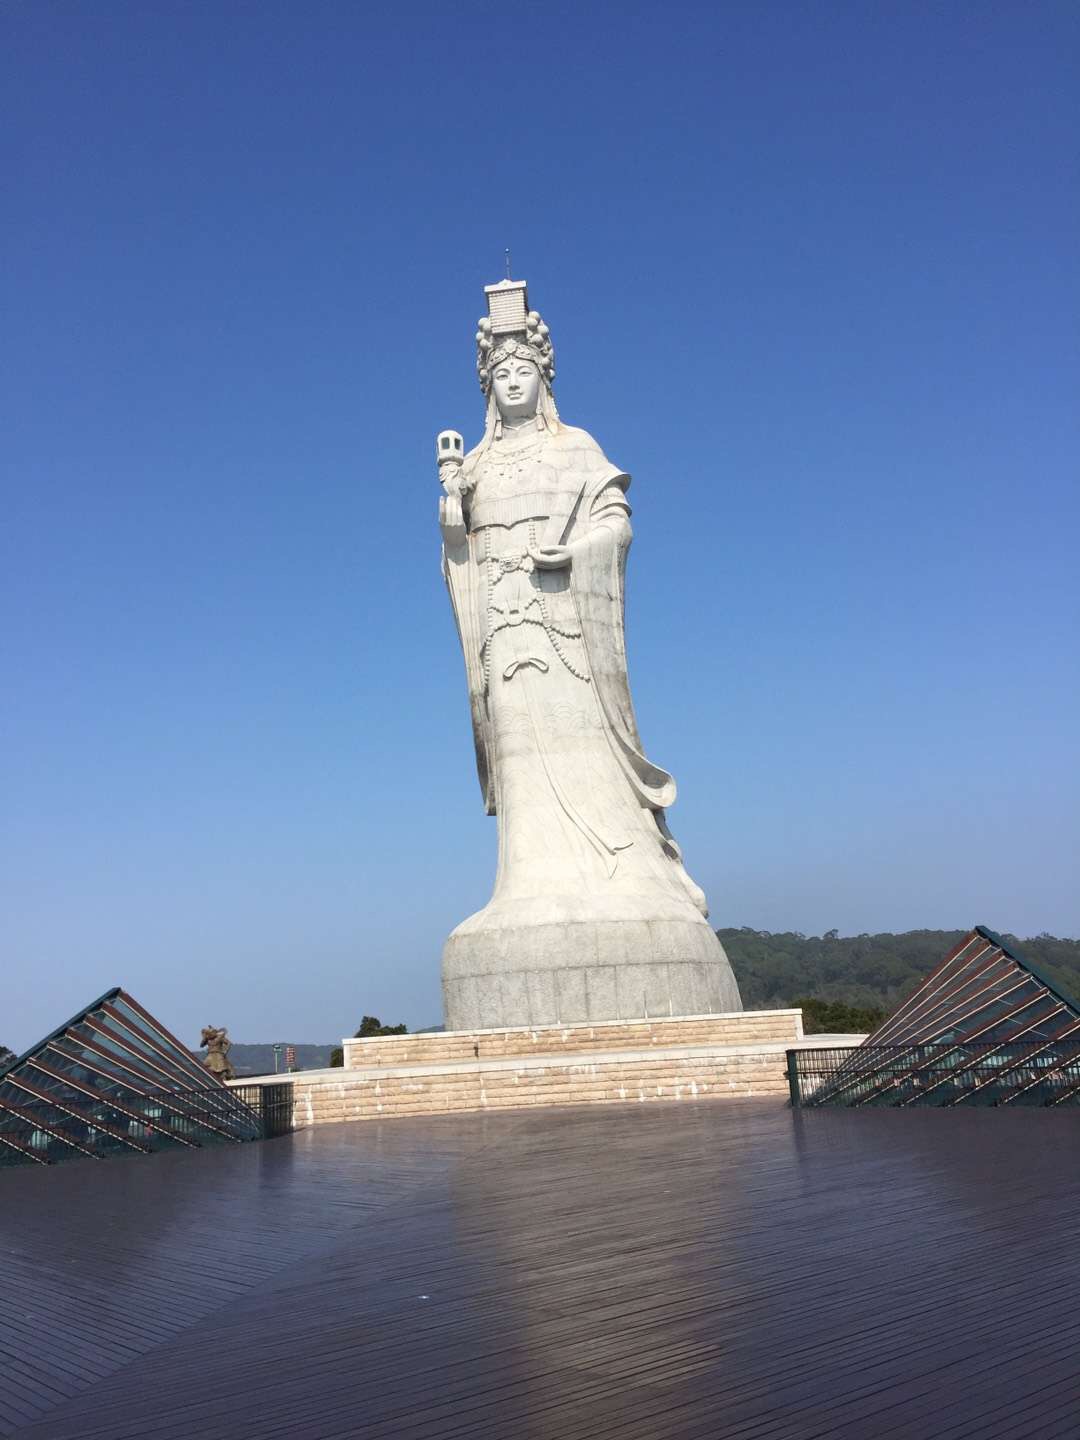 旅游台湾 > 游在台湾 > 离岛地区 > 连江县(马祖) > 妈祖巨神像